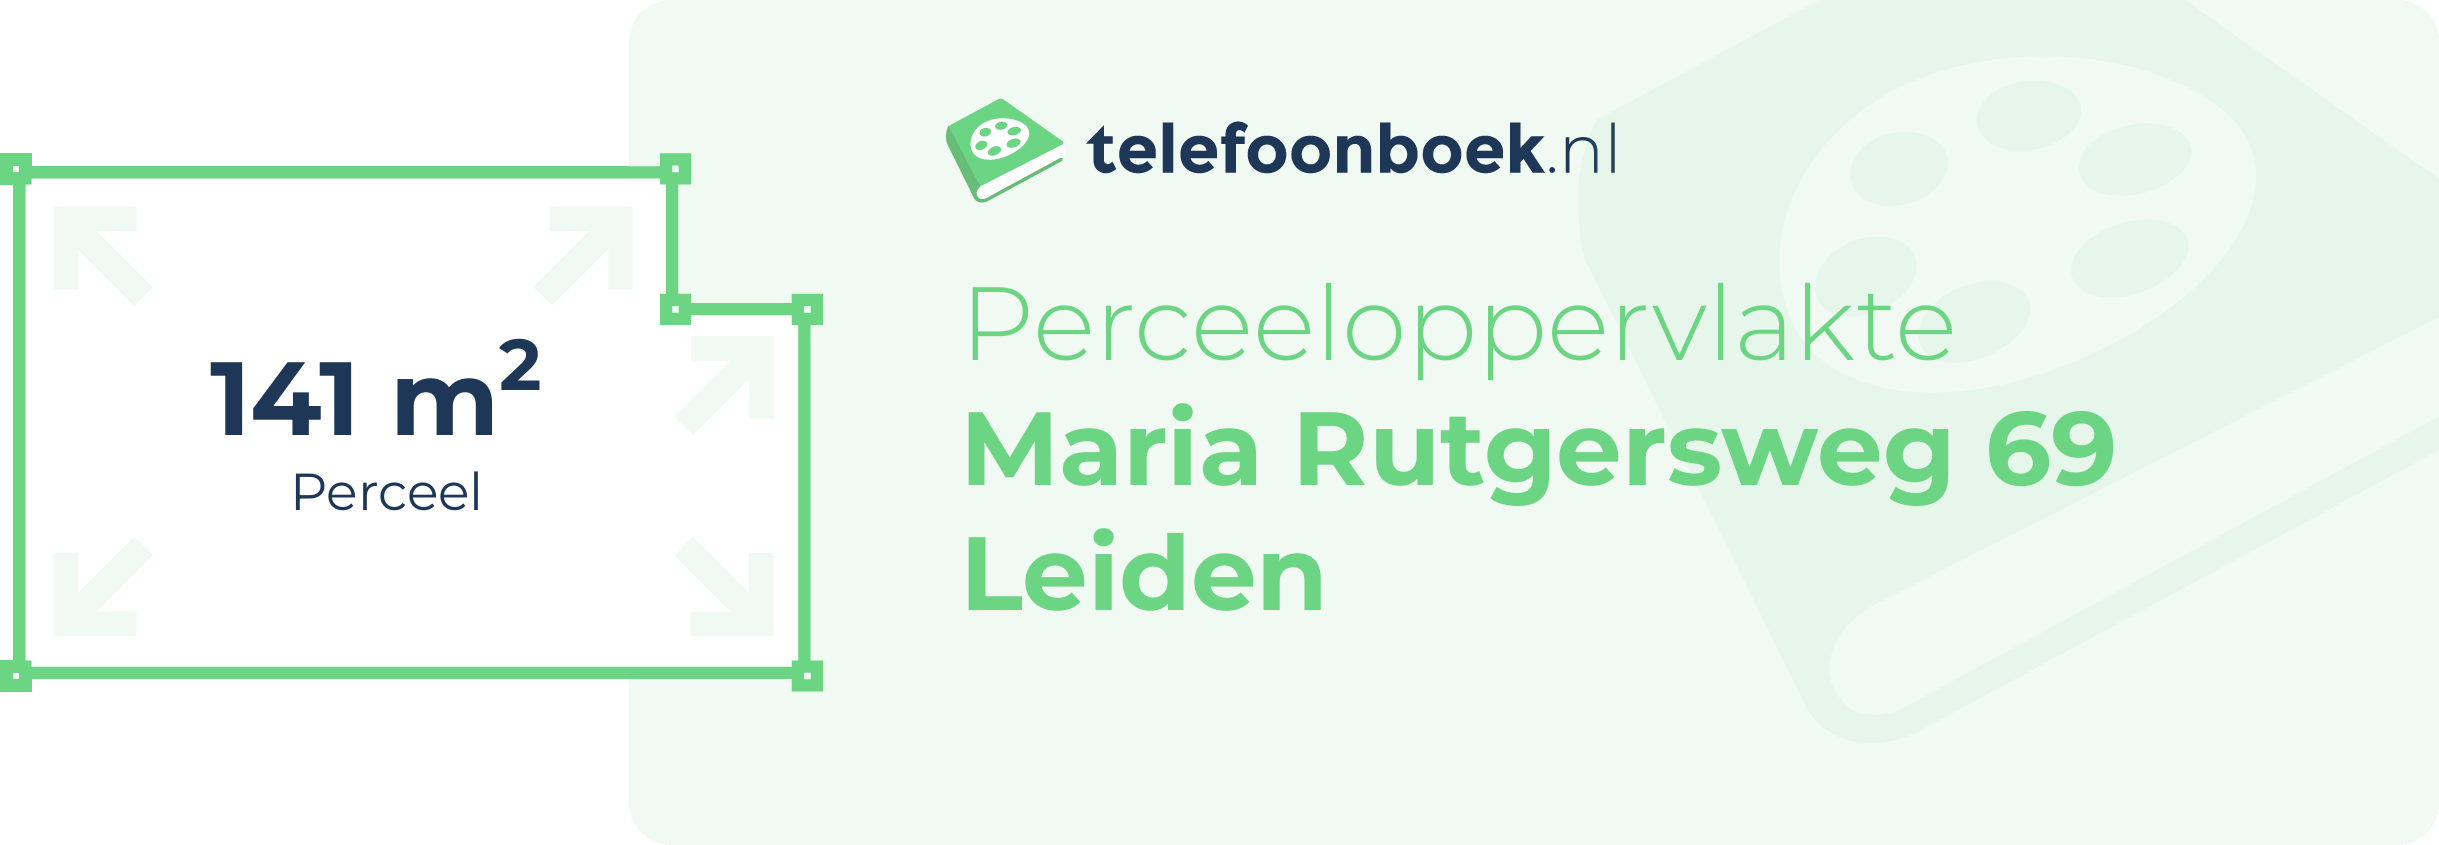 Perceeloppervlakte Maria Rutgersweg 69 Leiden